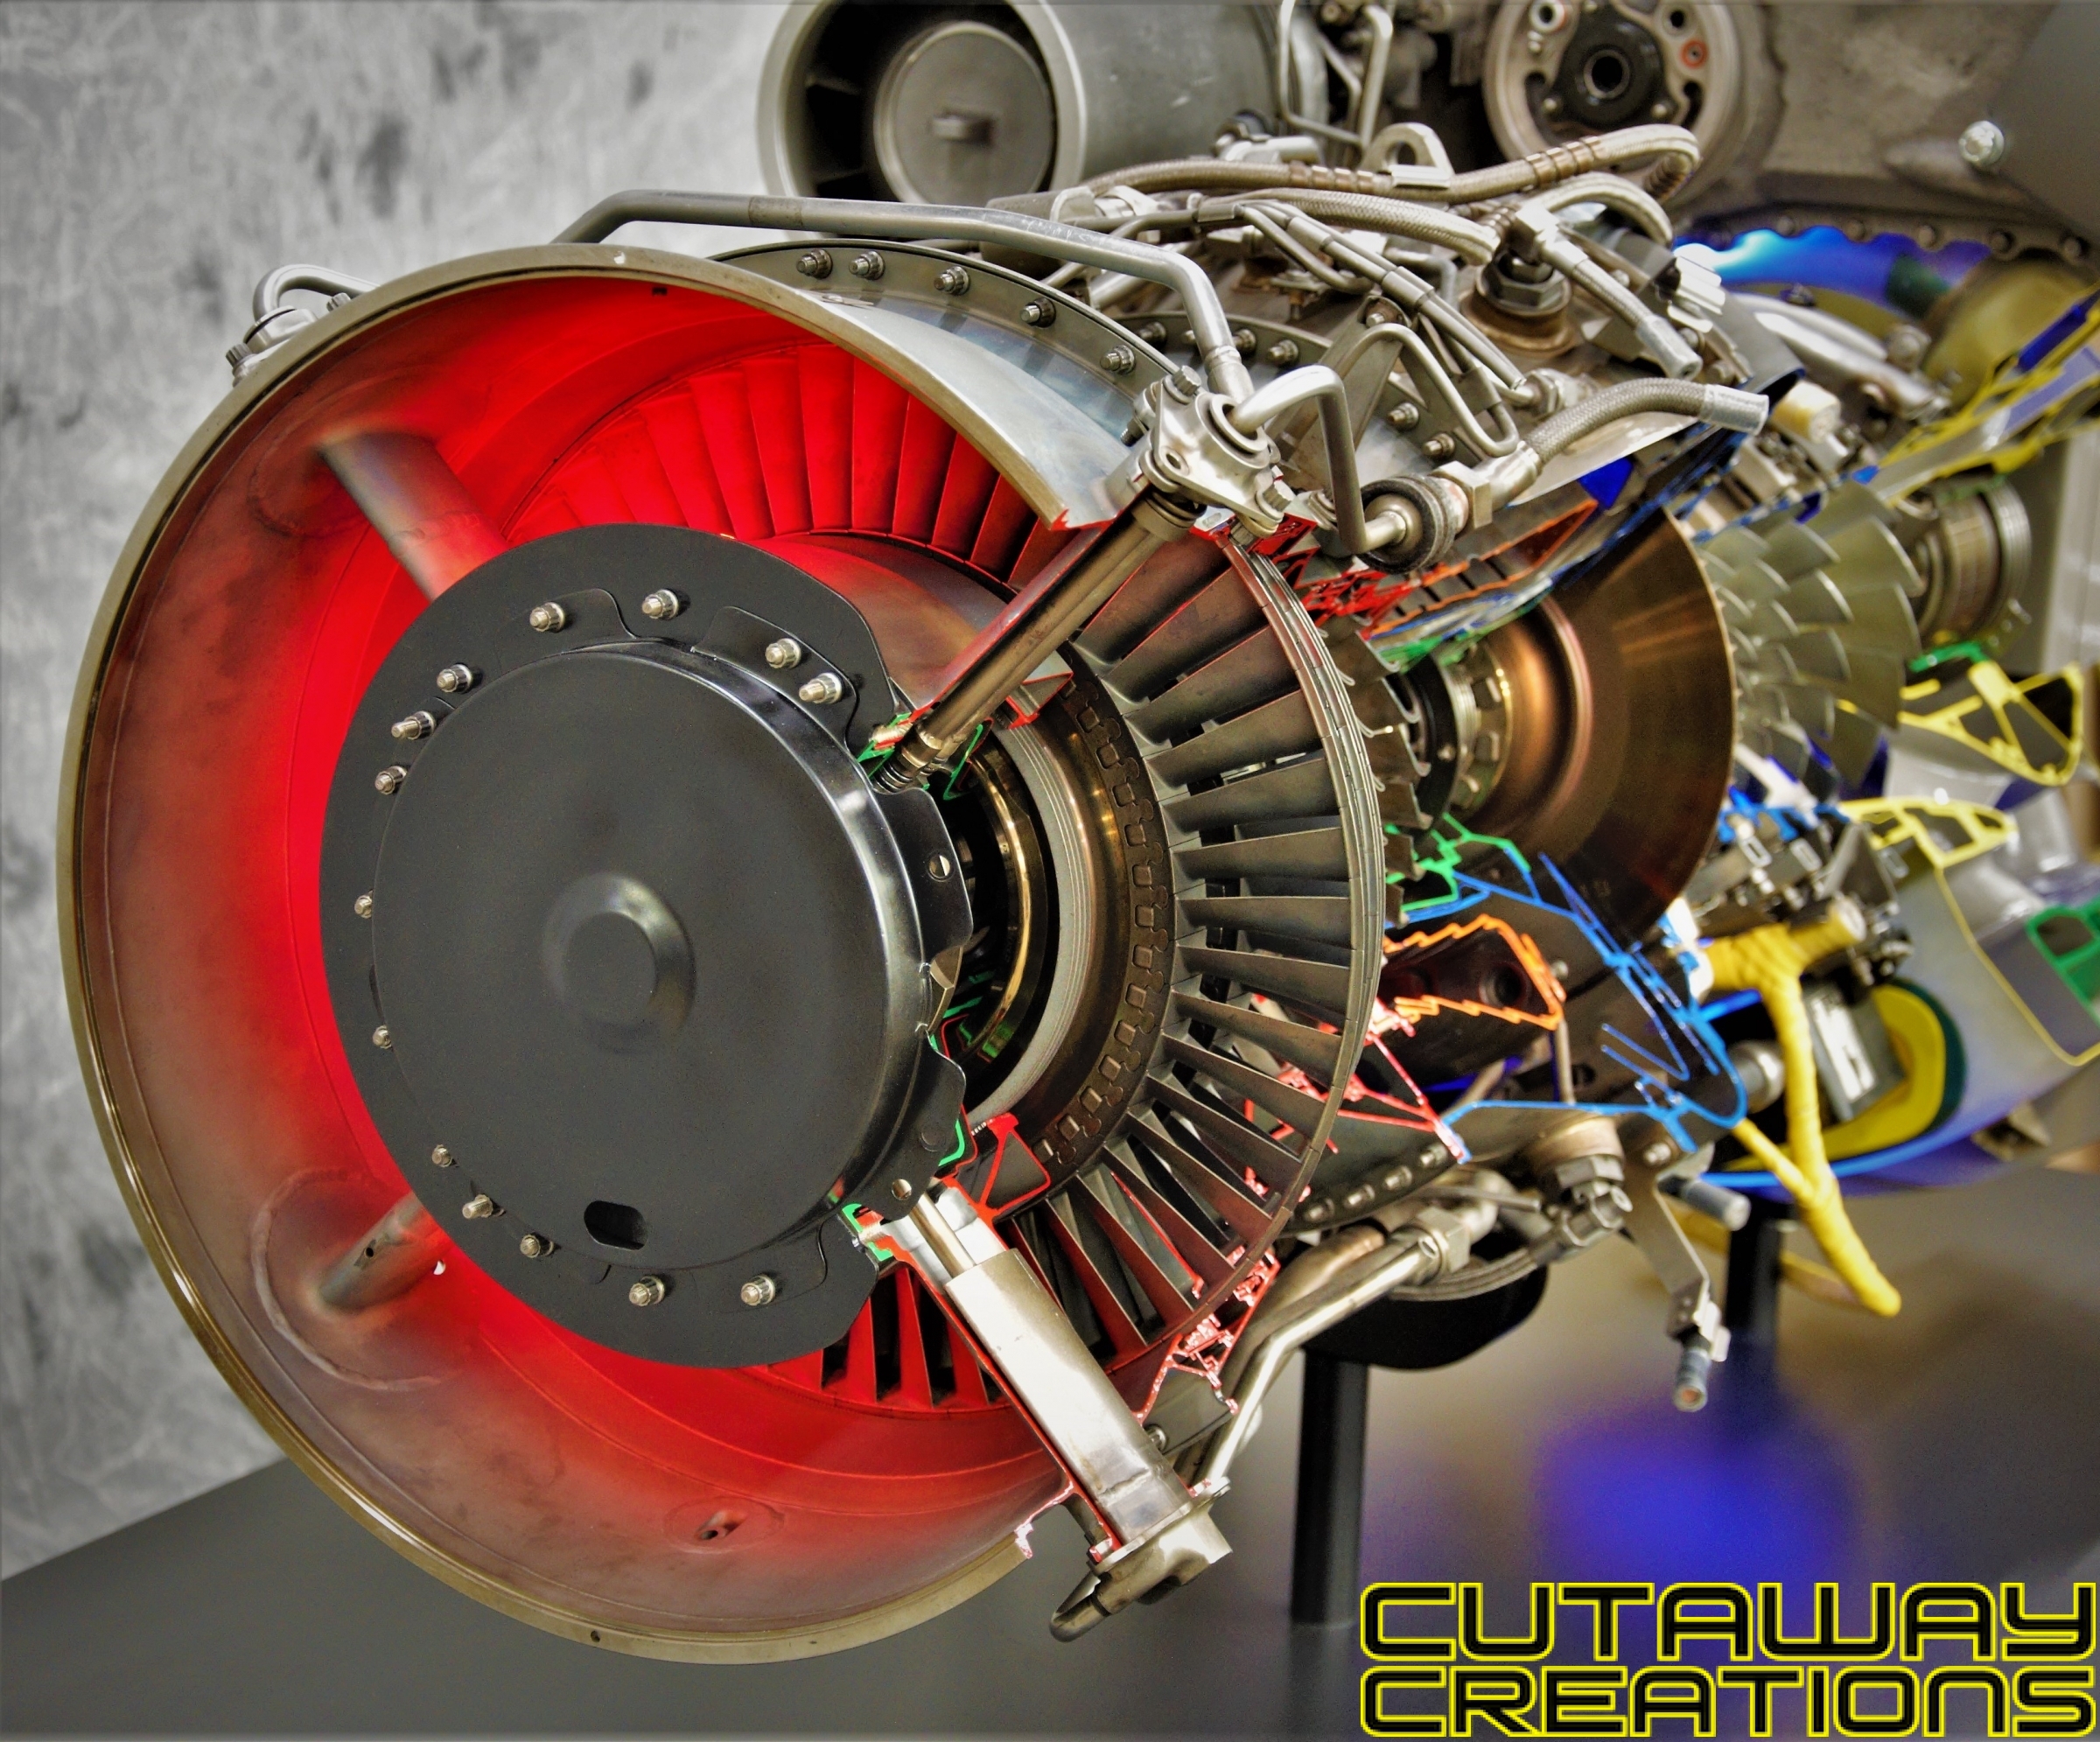 Black Hawk Ge T700 Engine Cutaway Creations